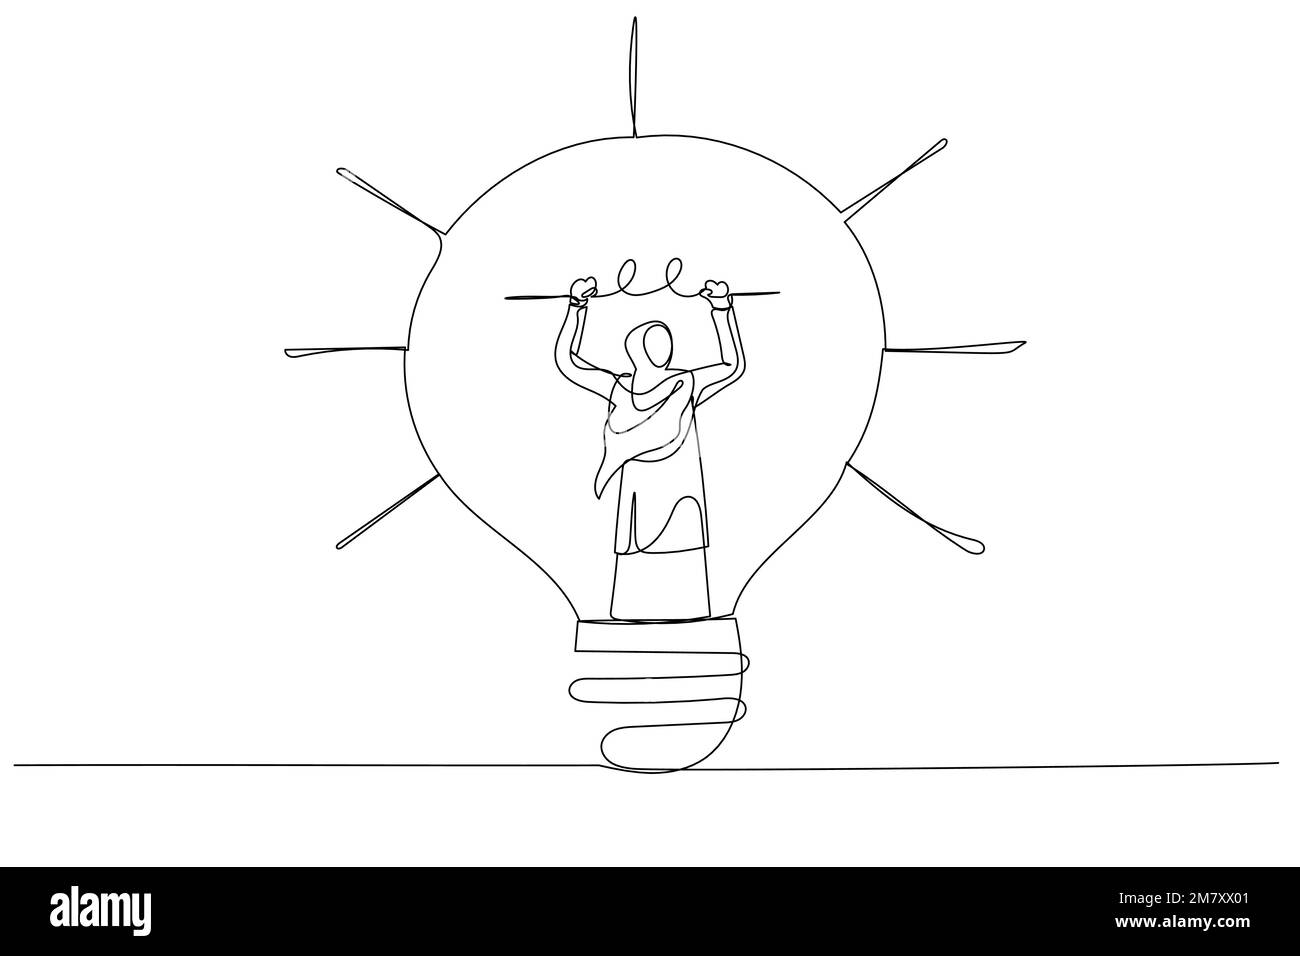 Caricature d’une femme d’affaires arabe musulmane qui se trouve à l’intérieur d’une ampoule pour fixer ou inventer une nouvelle métaphore de l’esprit d’entreprise. Style de dessin au trait continu Illustration de Vecteur